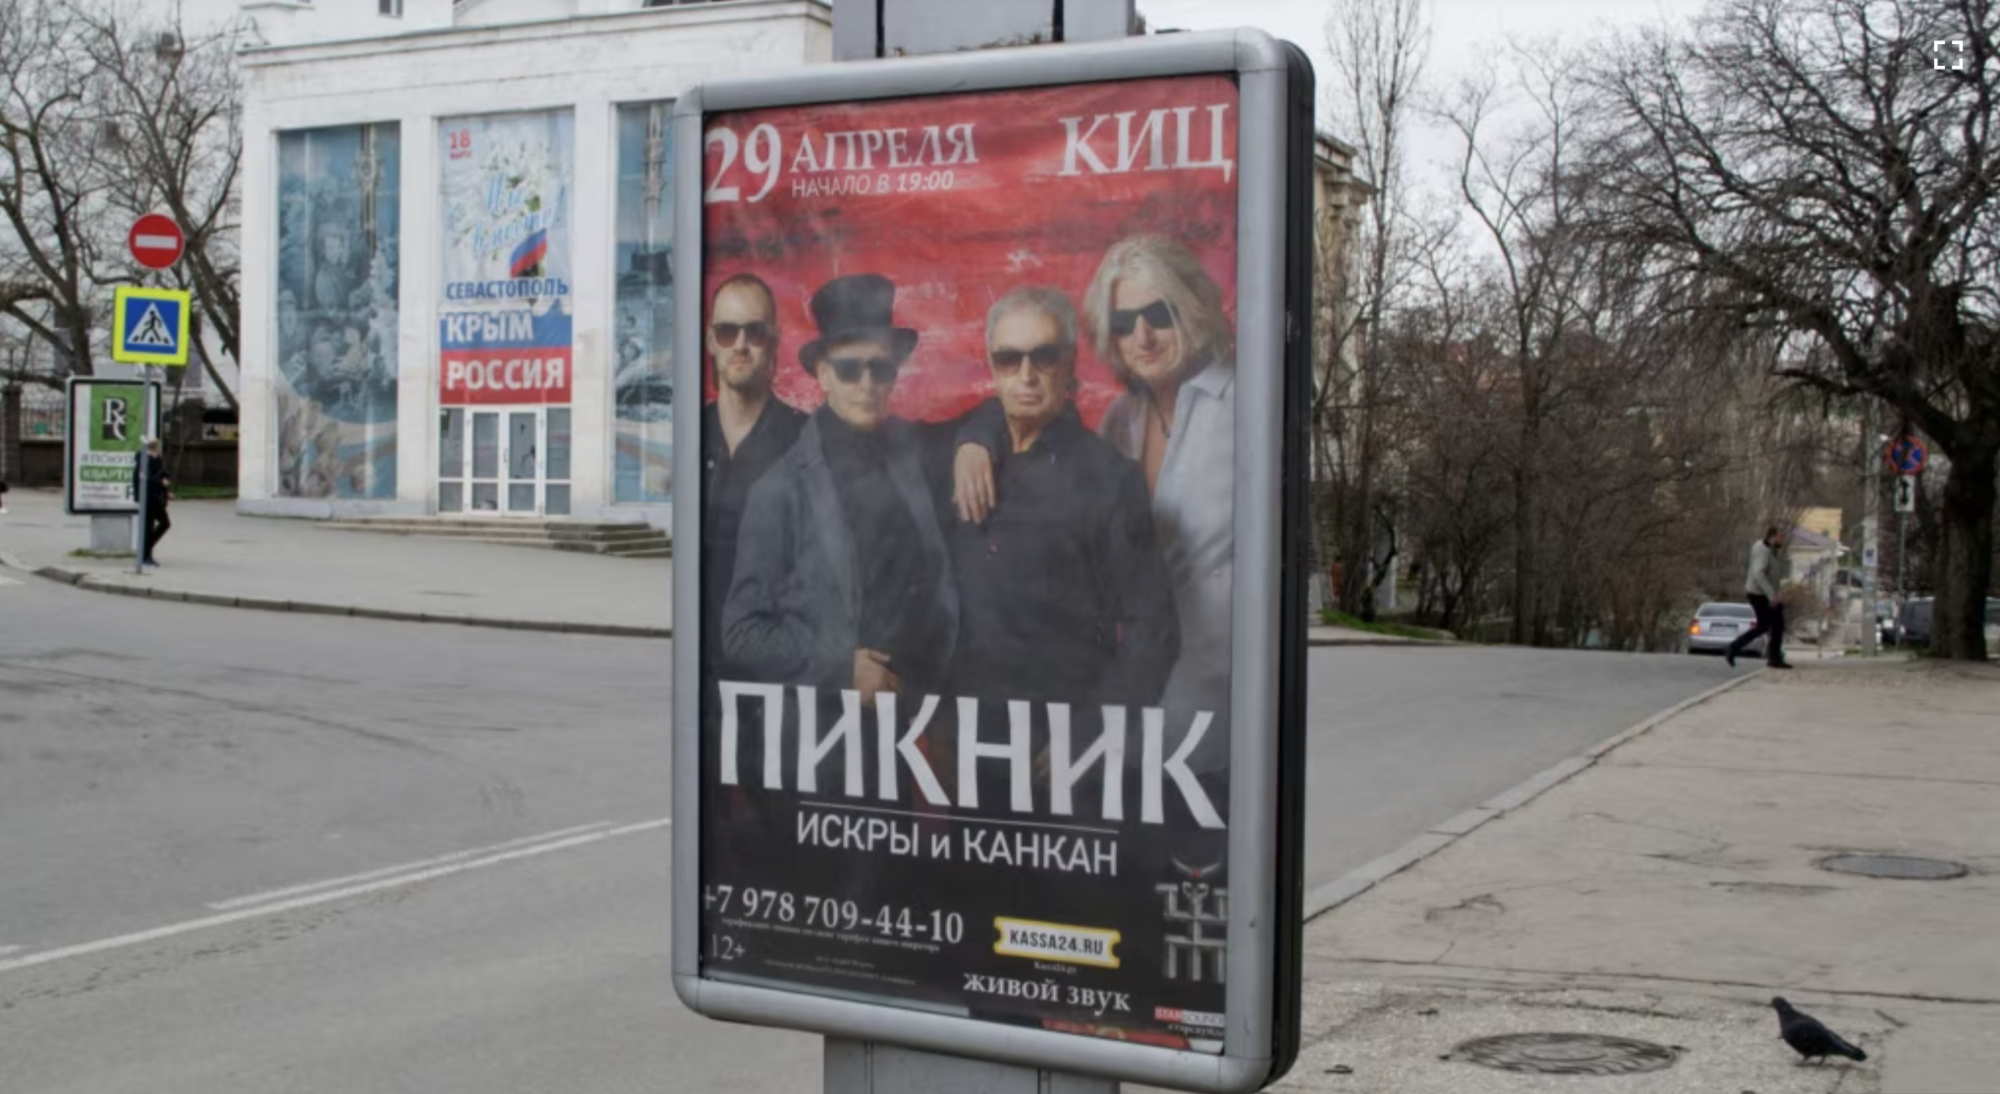 Что известно о группе "Пикник", на концерте которой произошел теракт: выступали в Украине, поддержали войну и потеряли в "Крокусе" участника